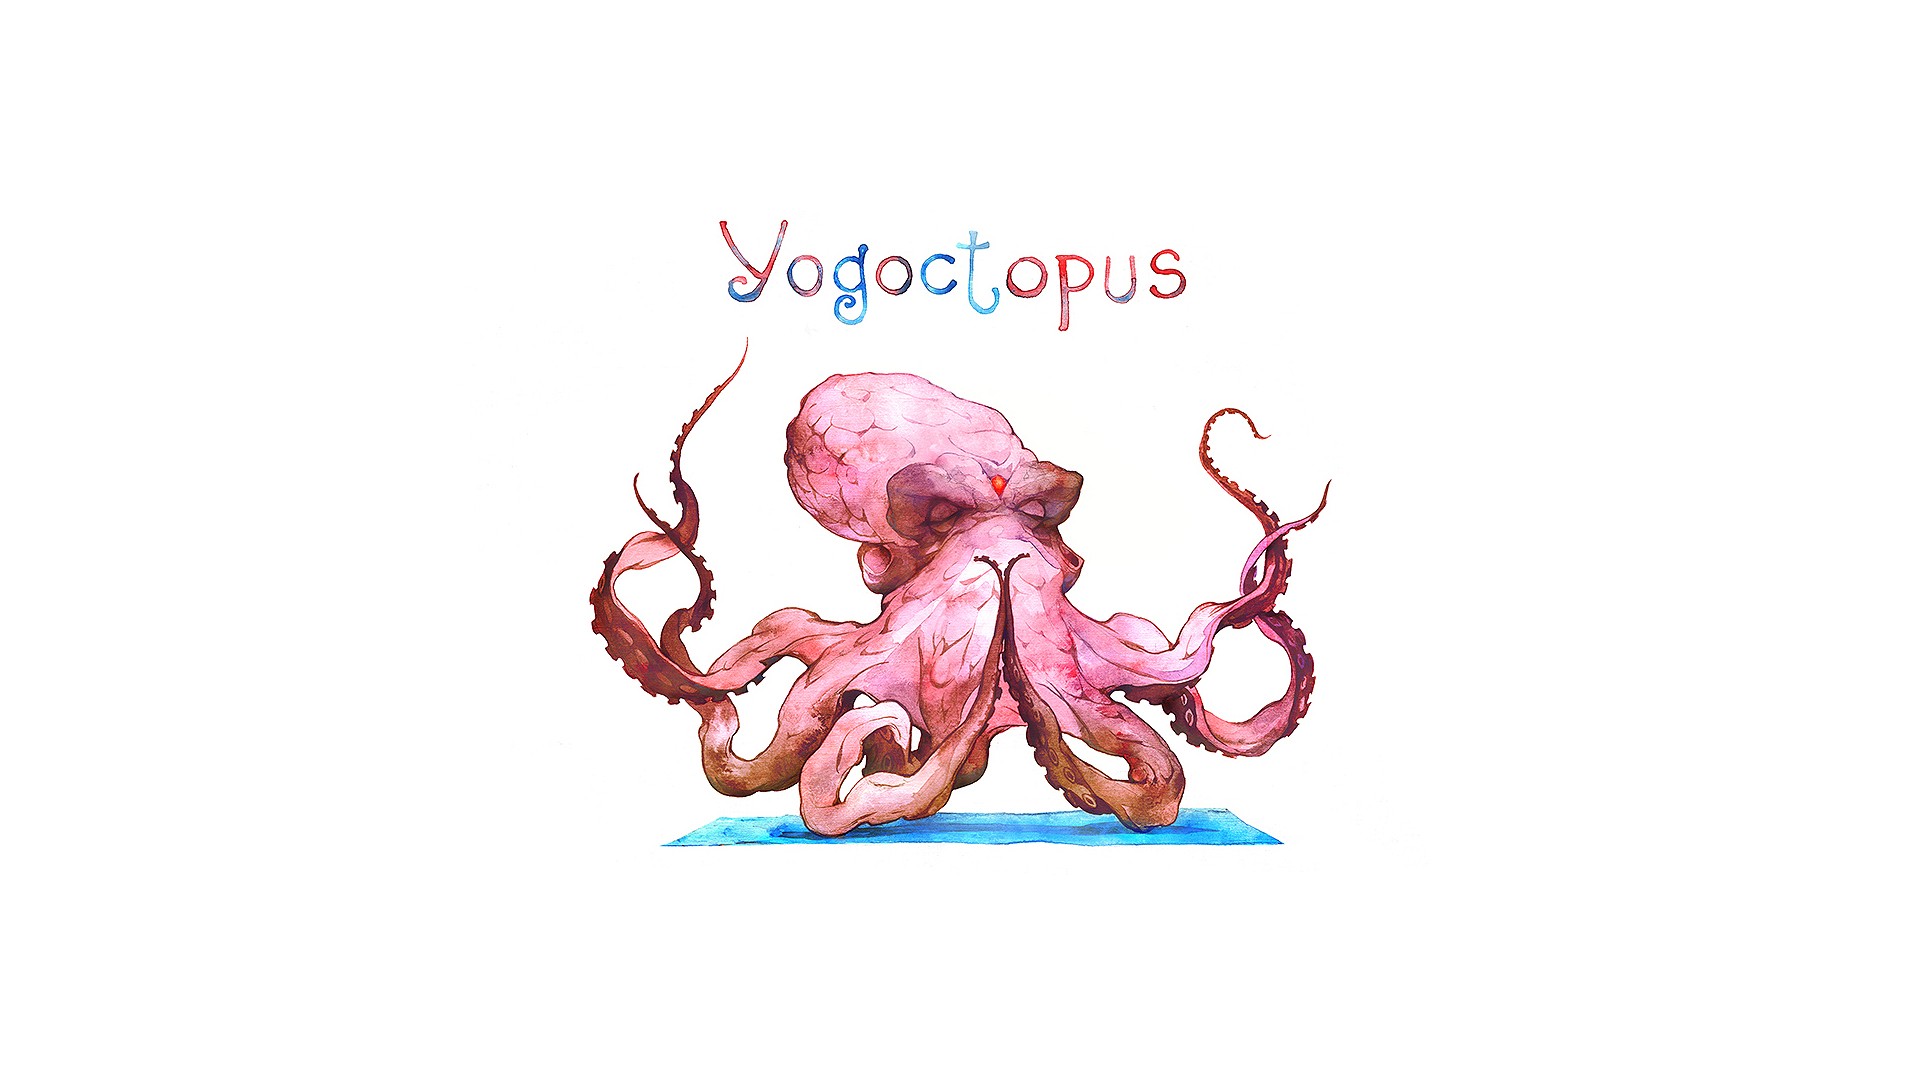 Yogoctopus, octopus doing Yoga by Alexandra Petruk